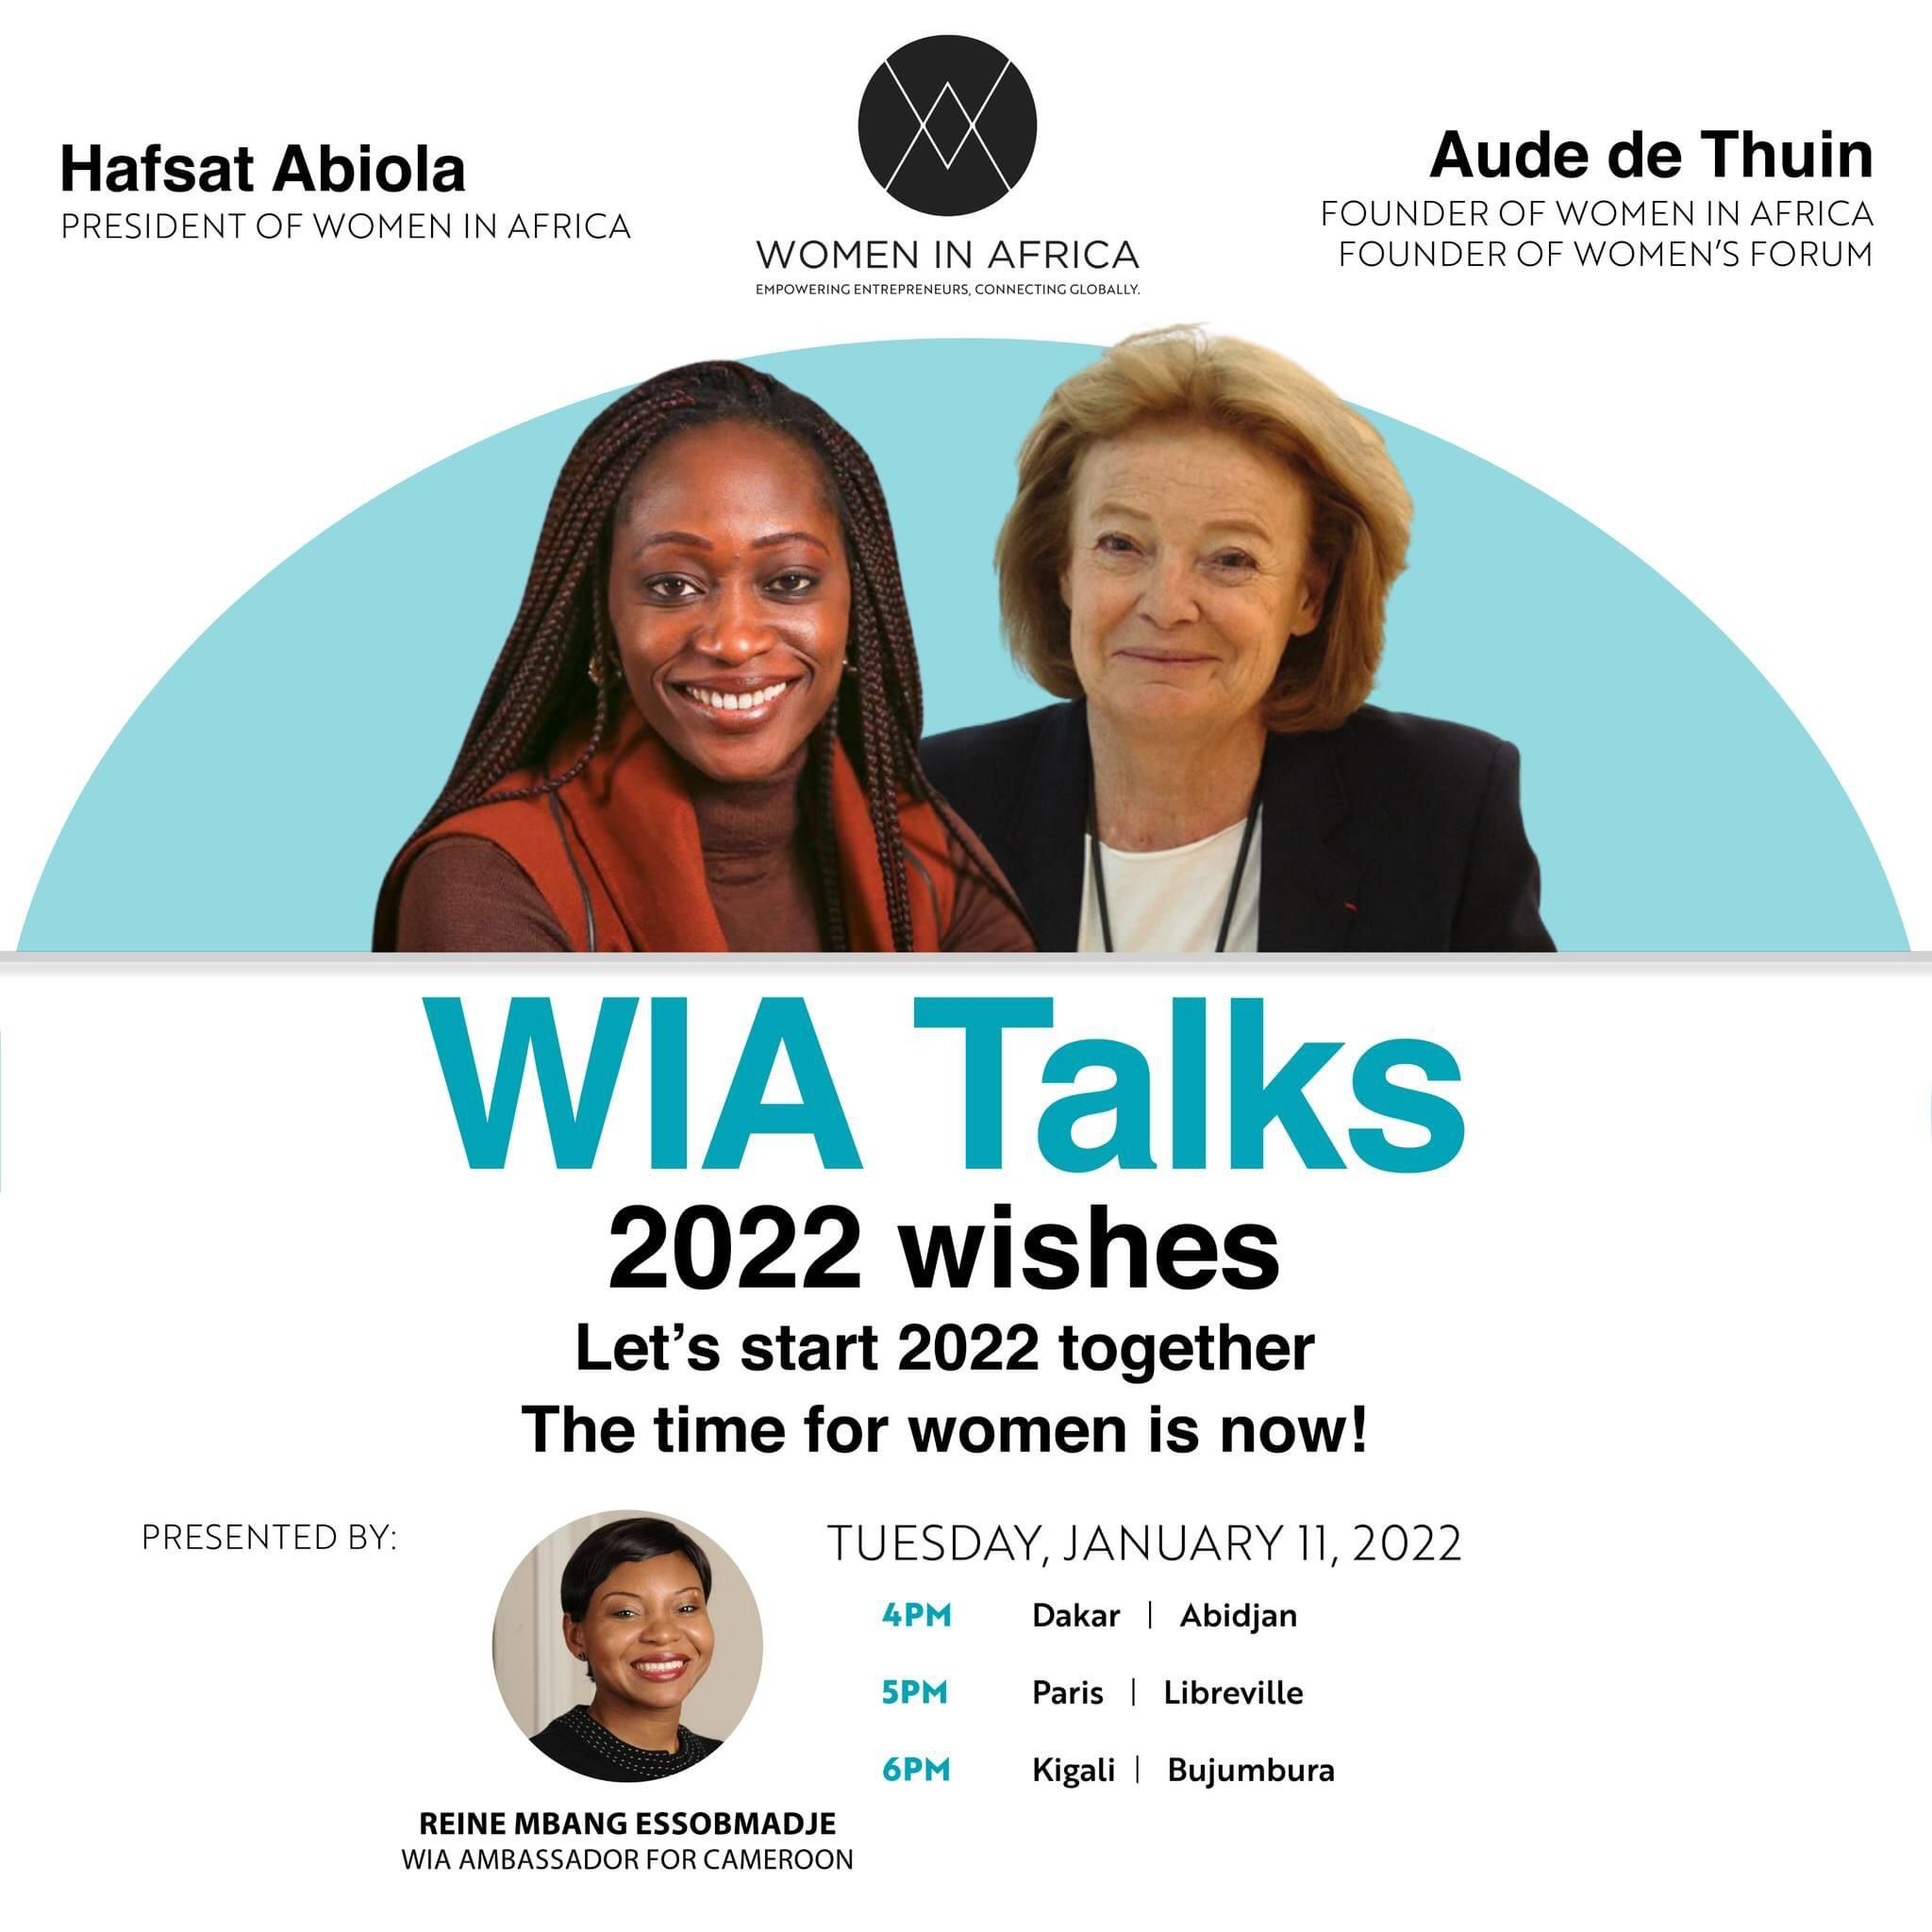 Women In Africa – Découvrez les nouveaux projets et objectifs 2022 !!!